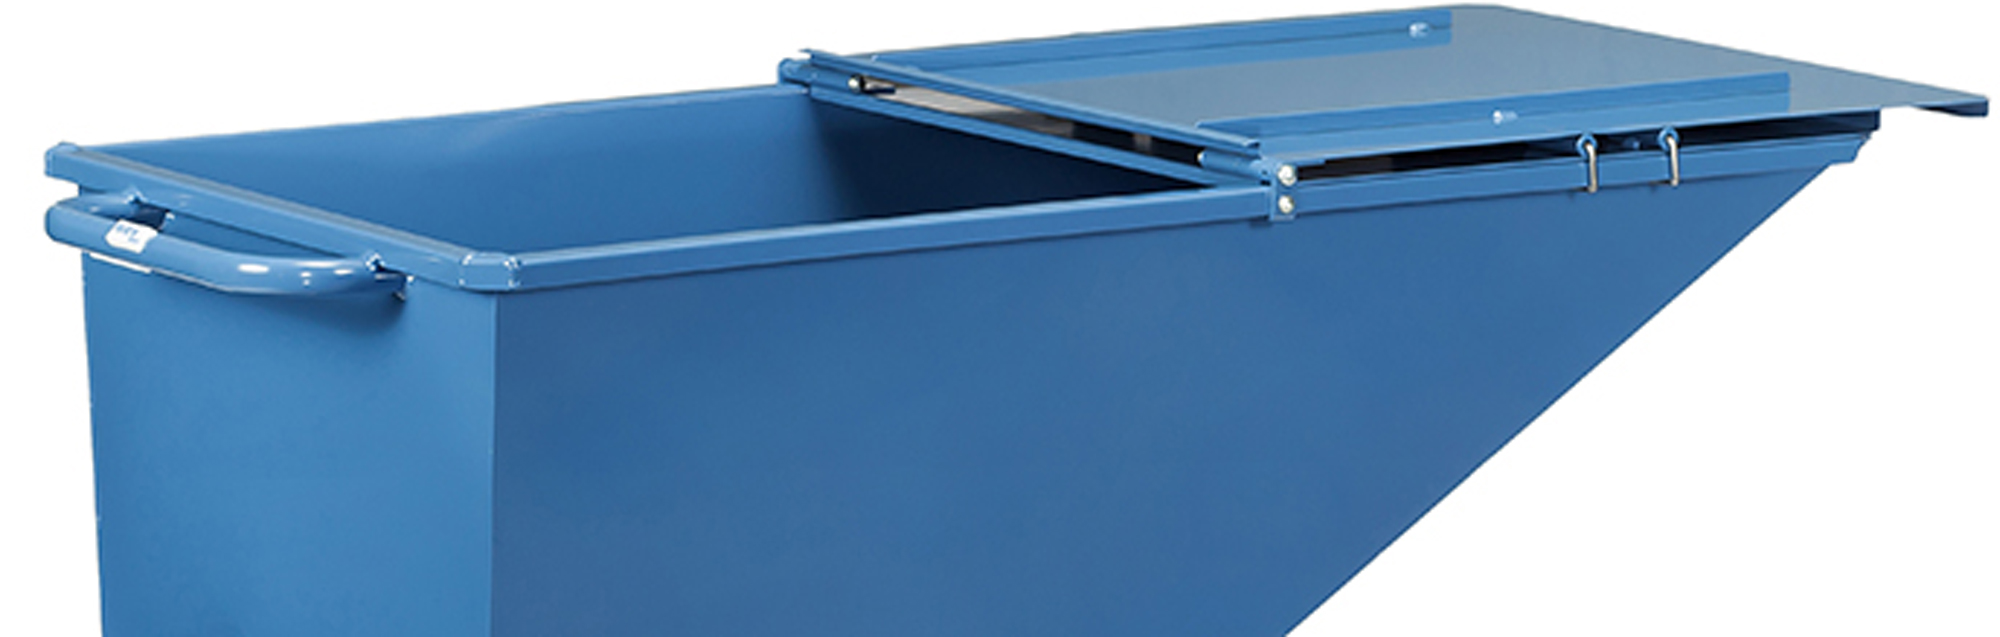 Fetra Deckel für Muldenkipper blau 47D1 - 250 Liter